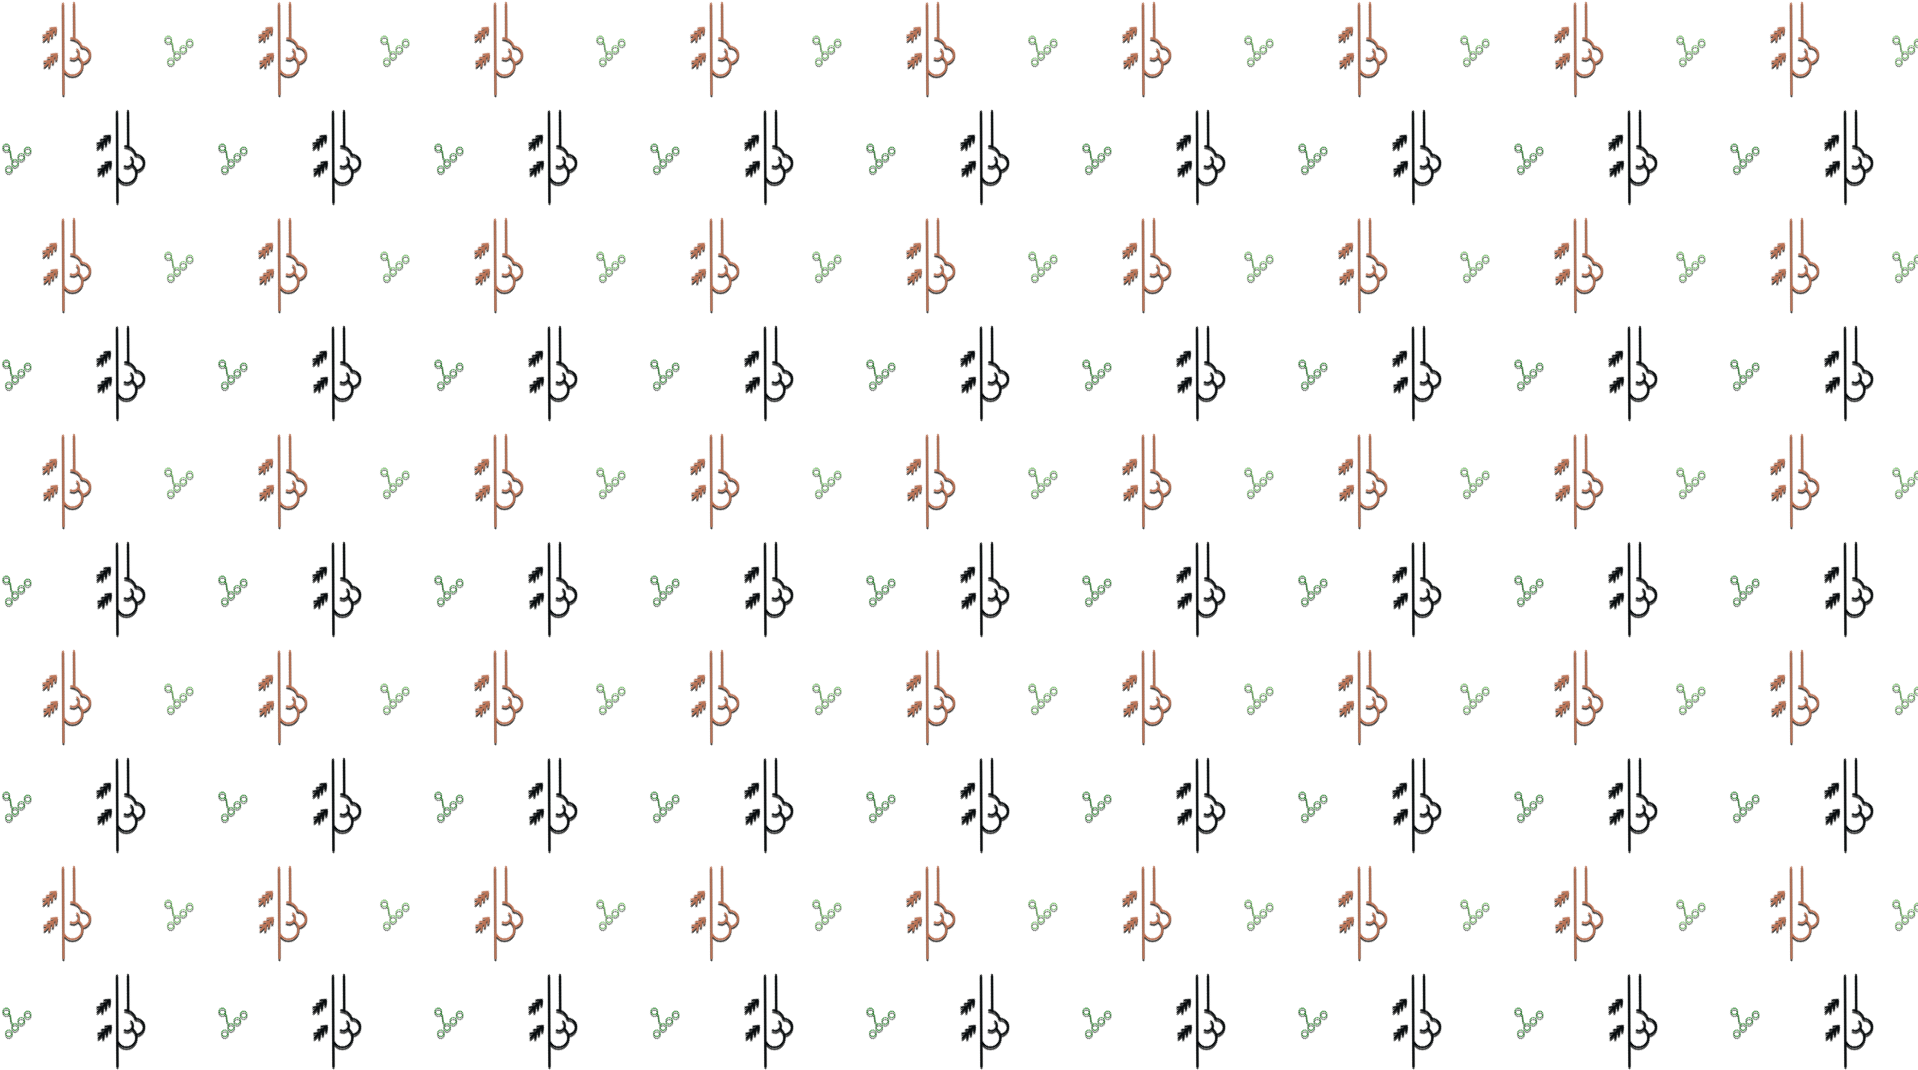 motif pattern